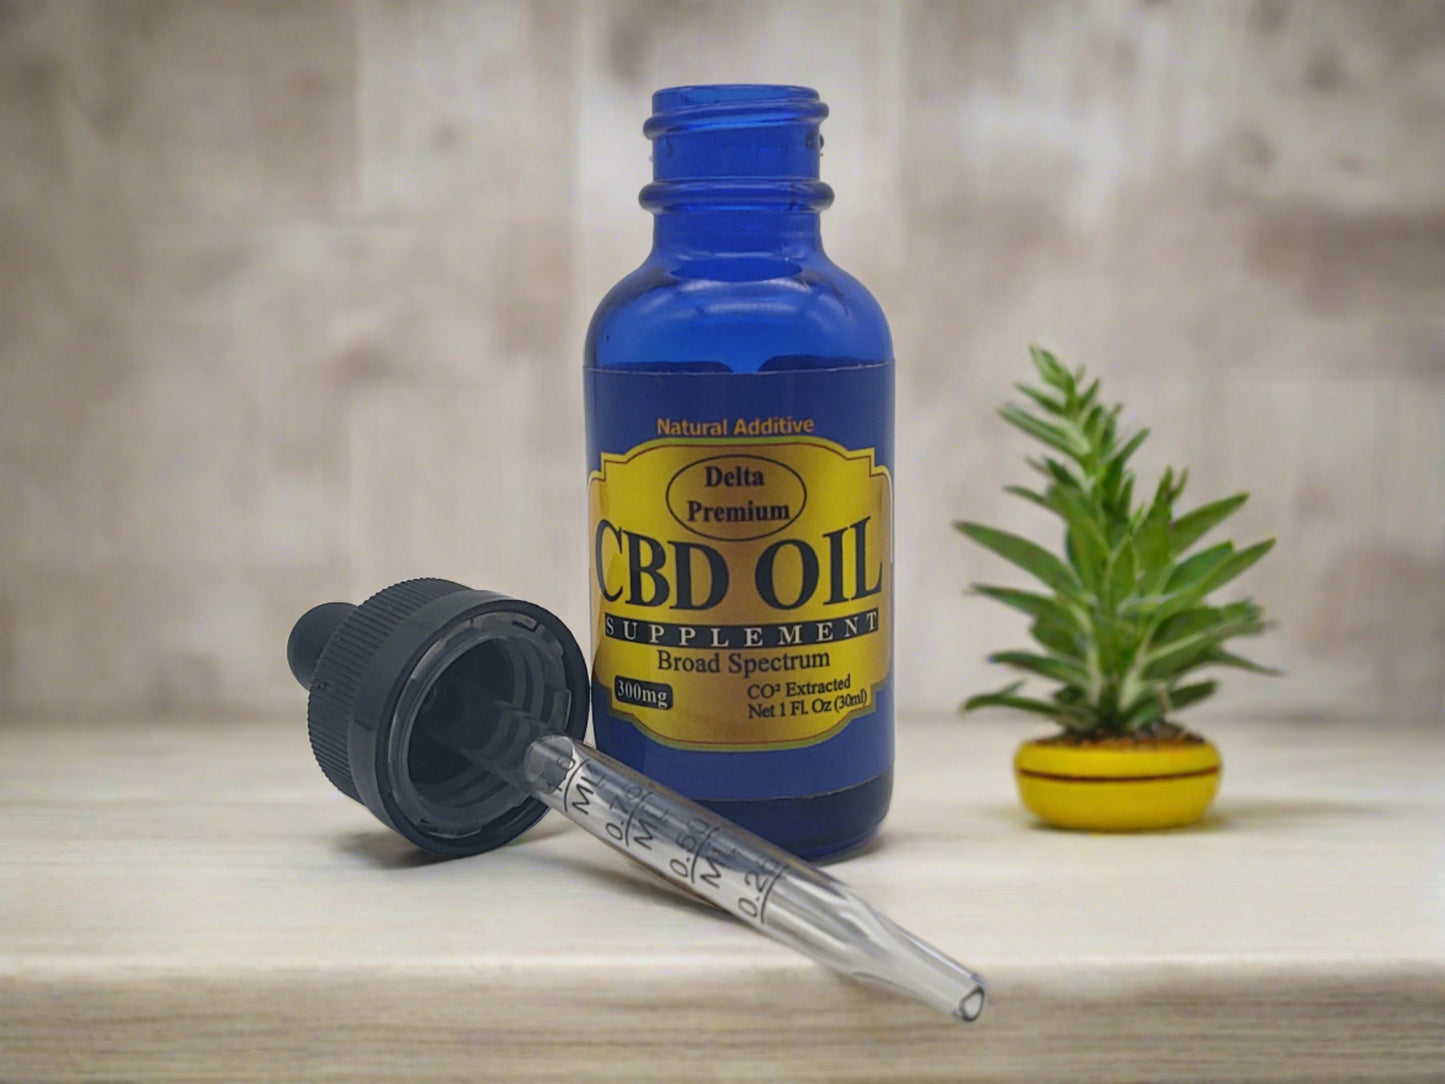 CBD Tincture Oil 300mg Broad Spectrum Delta Premium CBD 30ml bottle